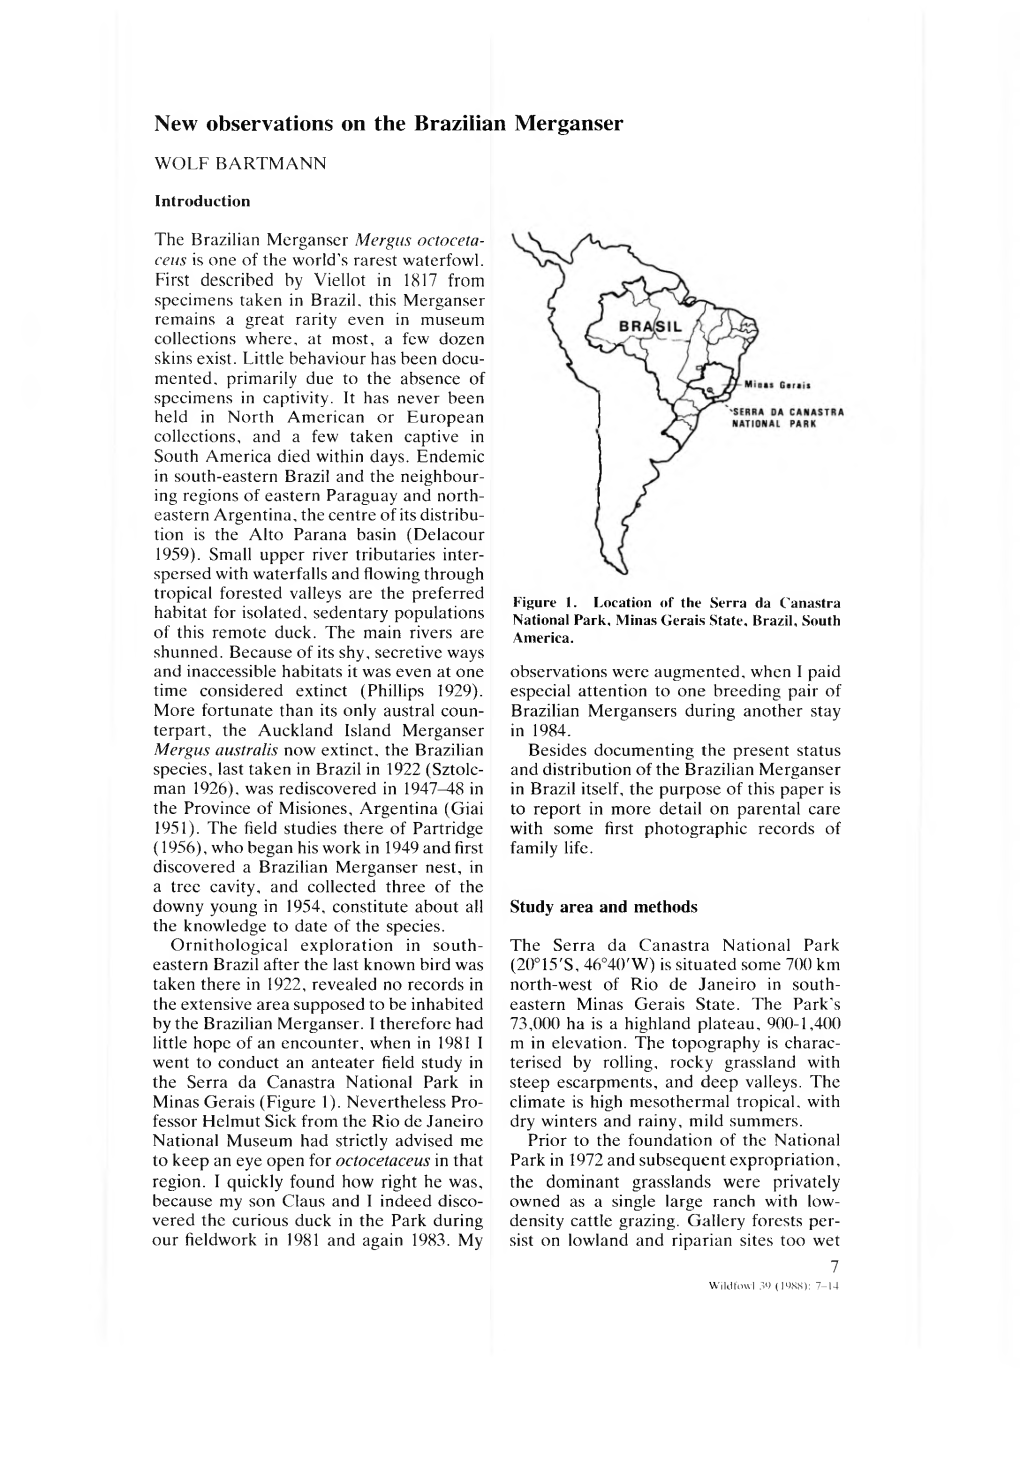 New Observations on the Brazilian Merganser